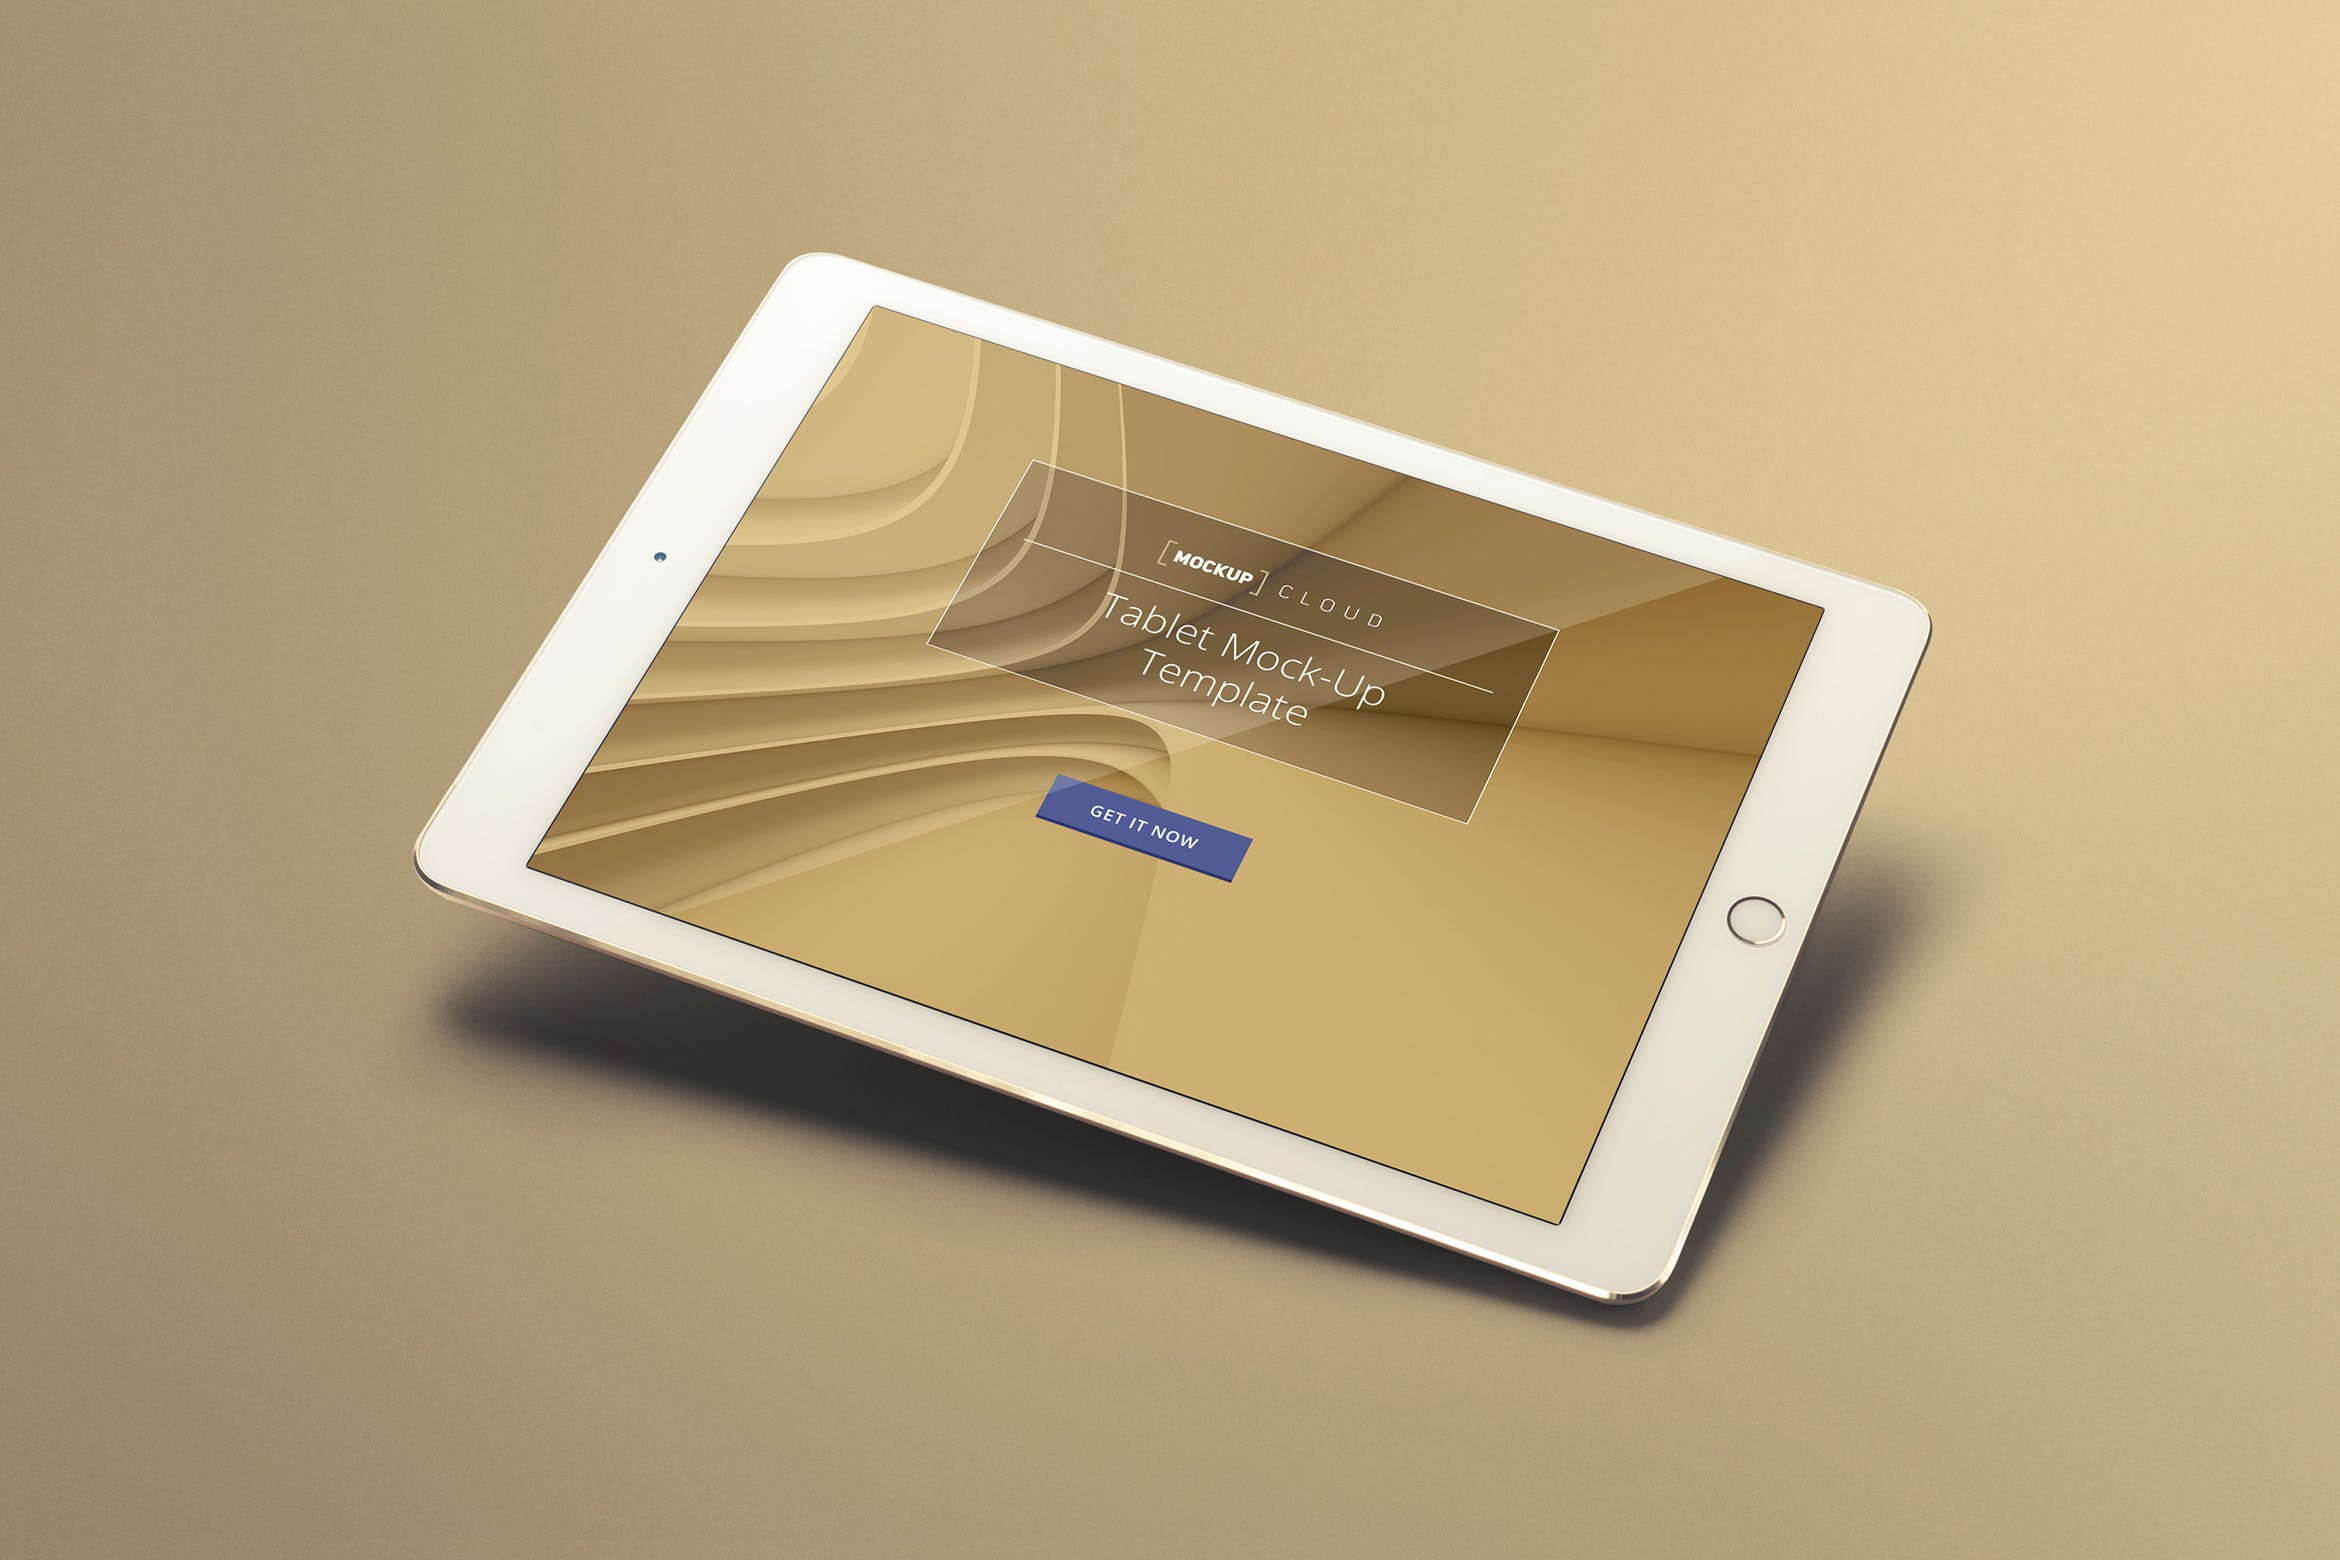 单色背景平板电脑UI设计展示第一素材精选样机 Tablet Mockup Set插图